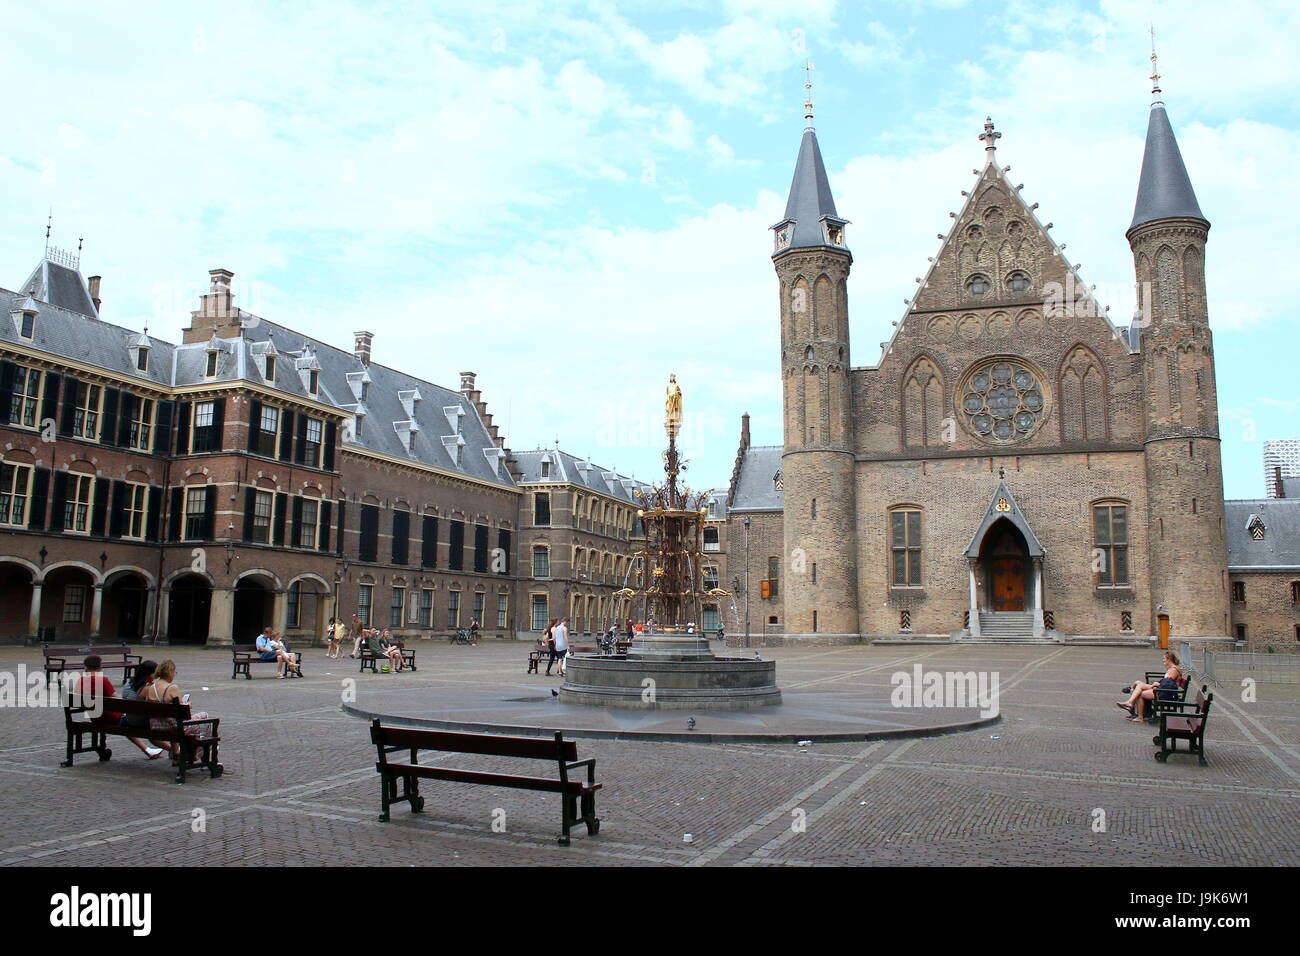 Binnenhof Platz mit Ridderzaal (Halle der Ritter) auf das 13. Jahrhundert Binnenhof in den Haag, Niederlande. Sitz der Regierung. Sommer 2017 Stockfoto